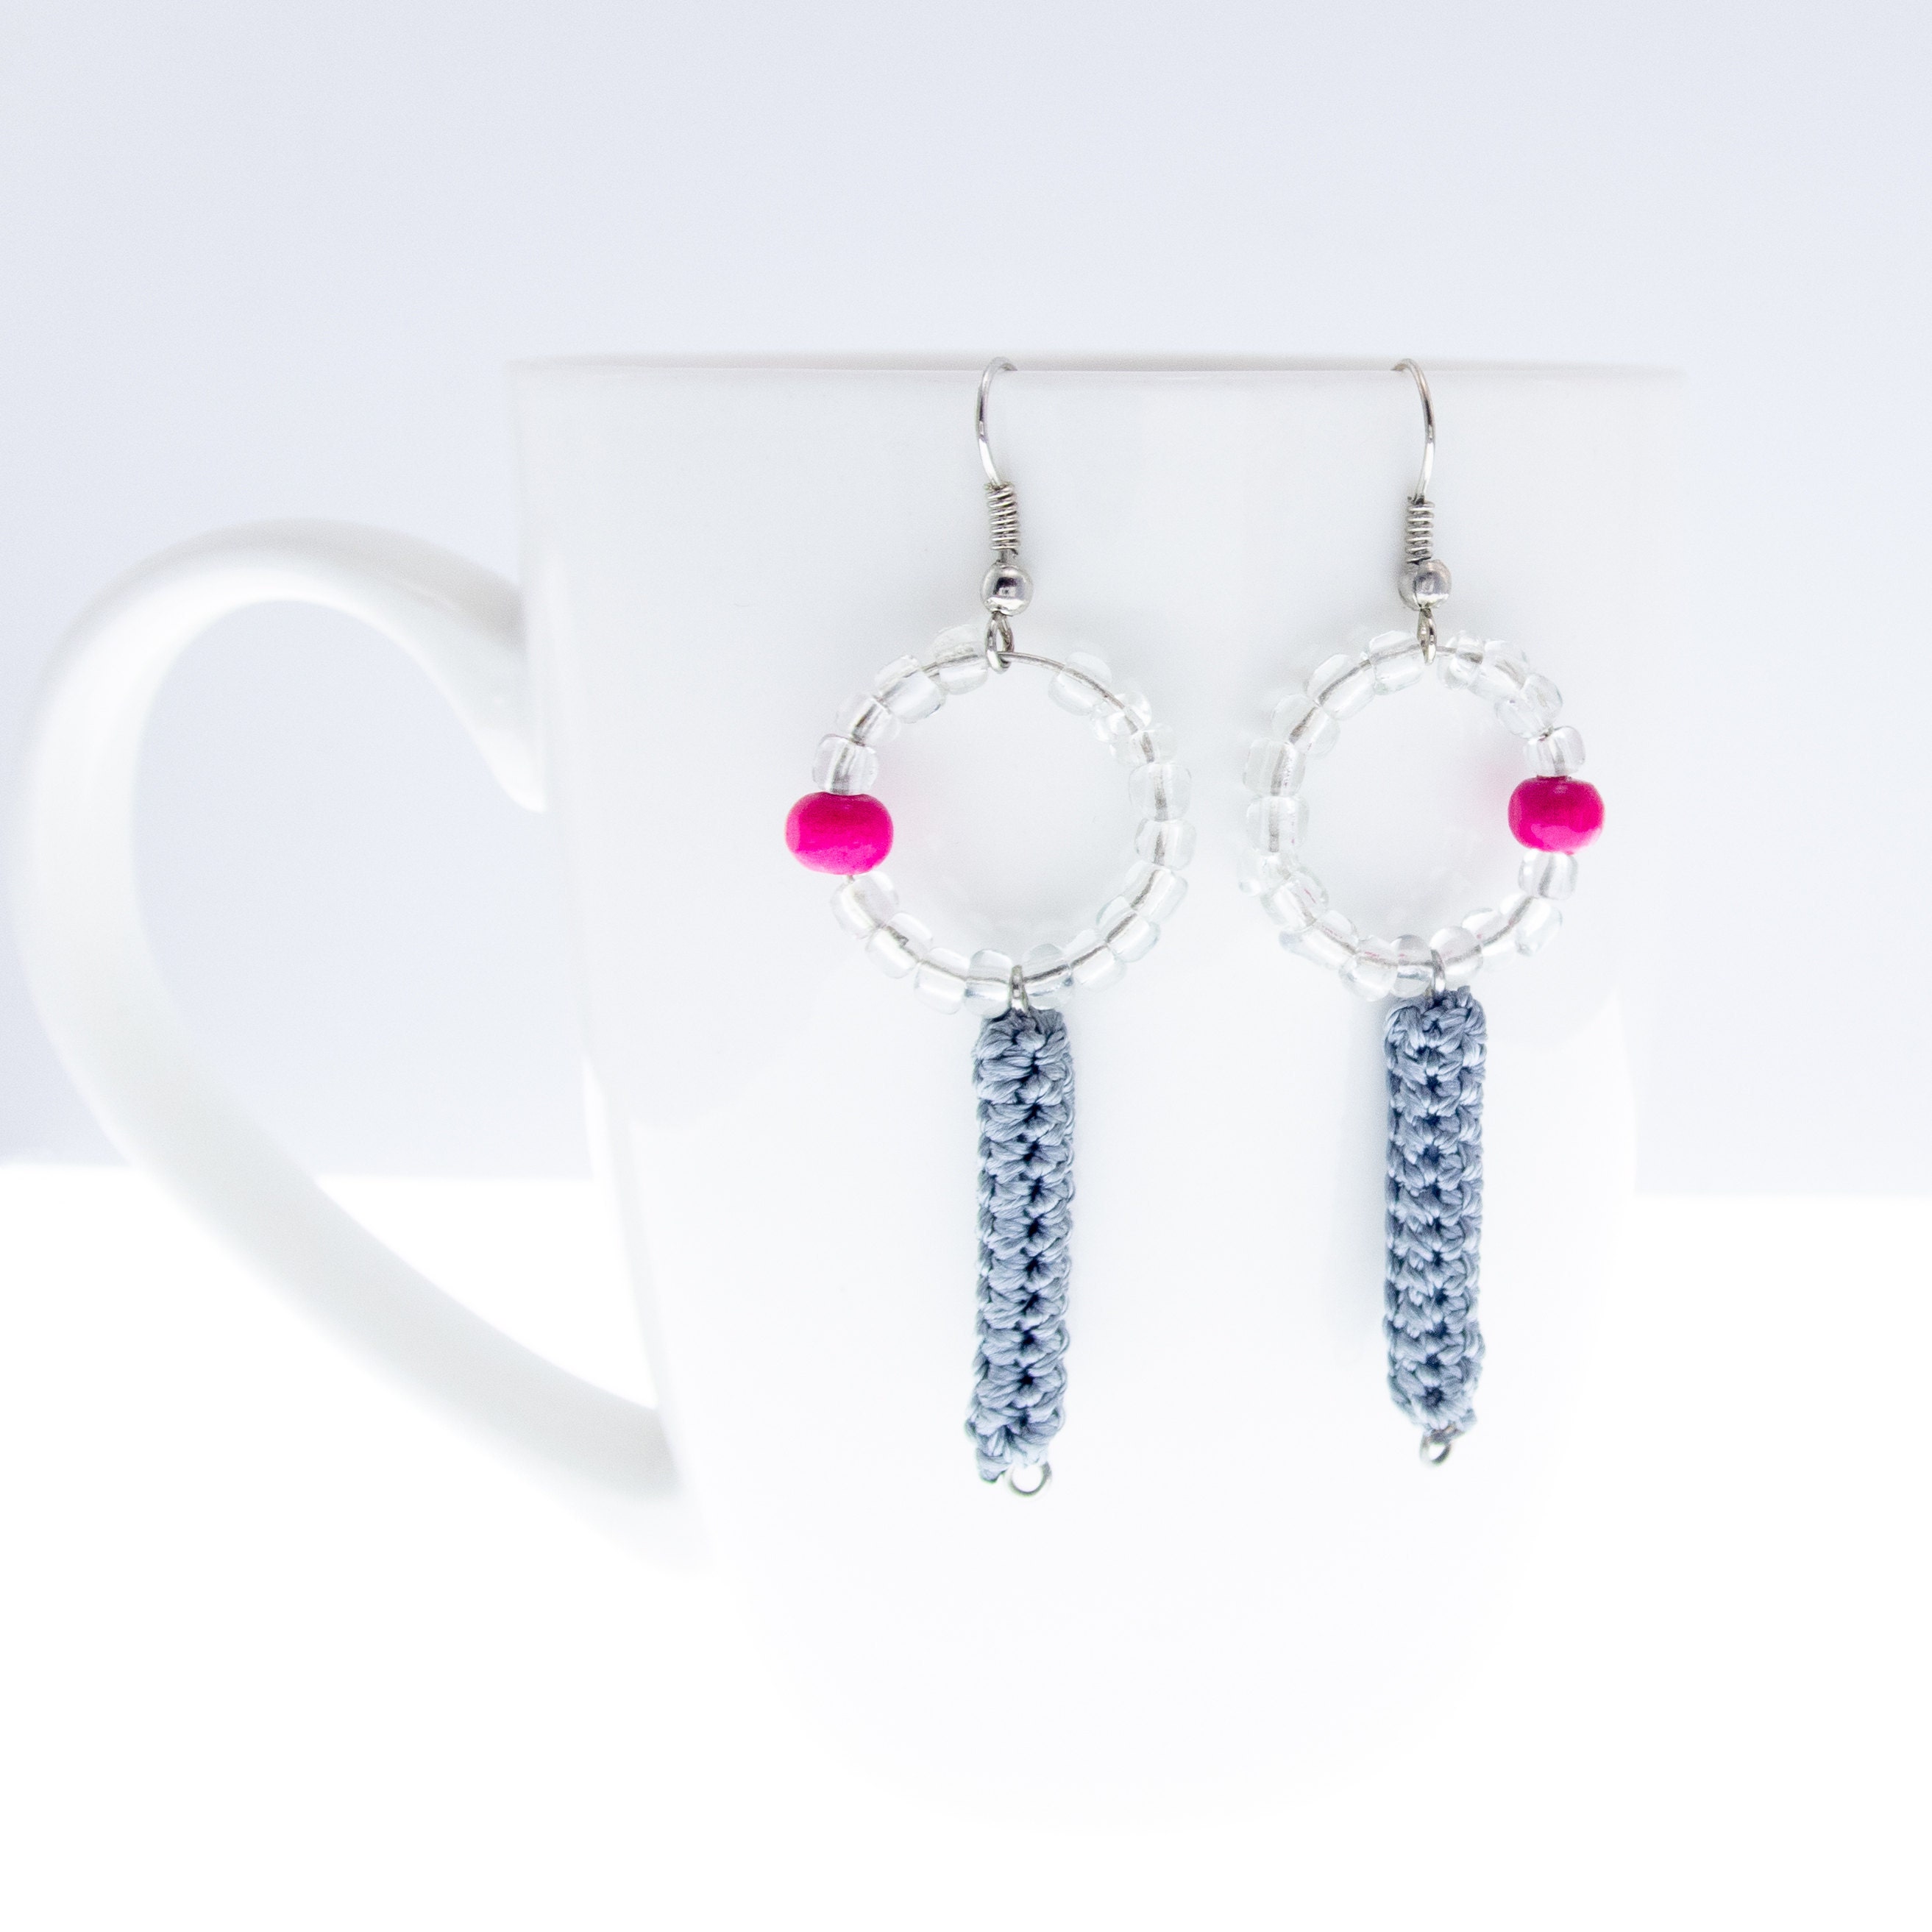 handmade fashion jewelry earrings in bohemian style